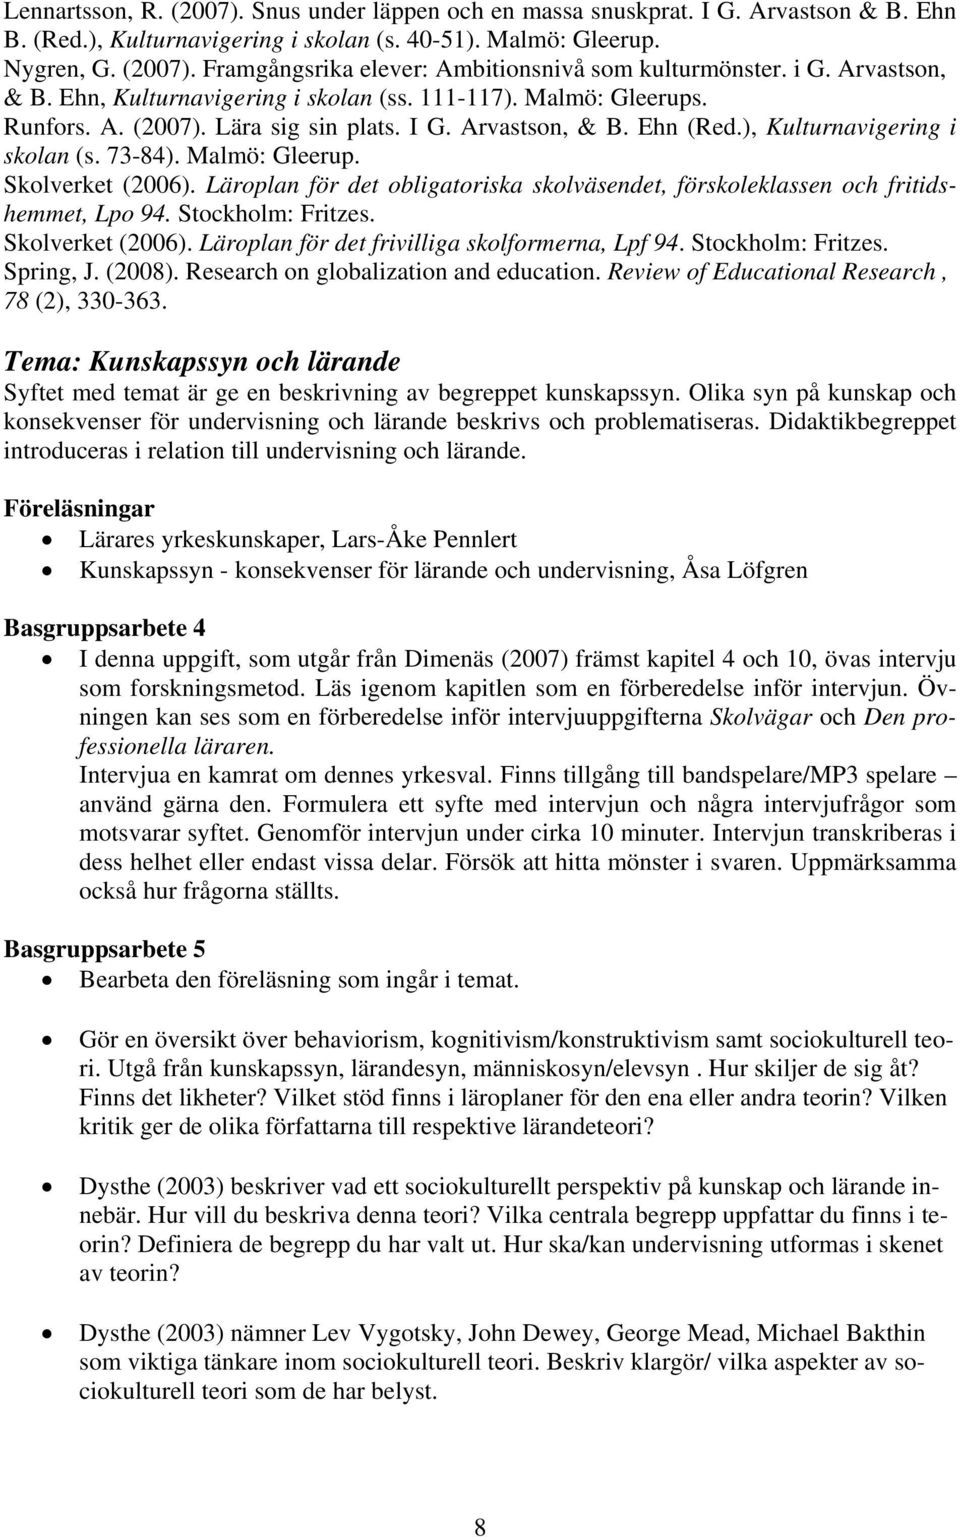 Malmö: Gleerup. Skolverket (2006). Läroplan för det obligatoriska skolväsendet, förskoleklassen och fritidshemmet, Lpo 94. Stockholm: Fritzes. Skolverket (2006). Läroplan för det frivilliga skolformerna, Lpf 94.